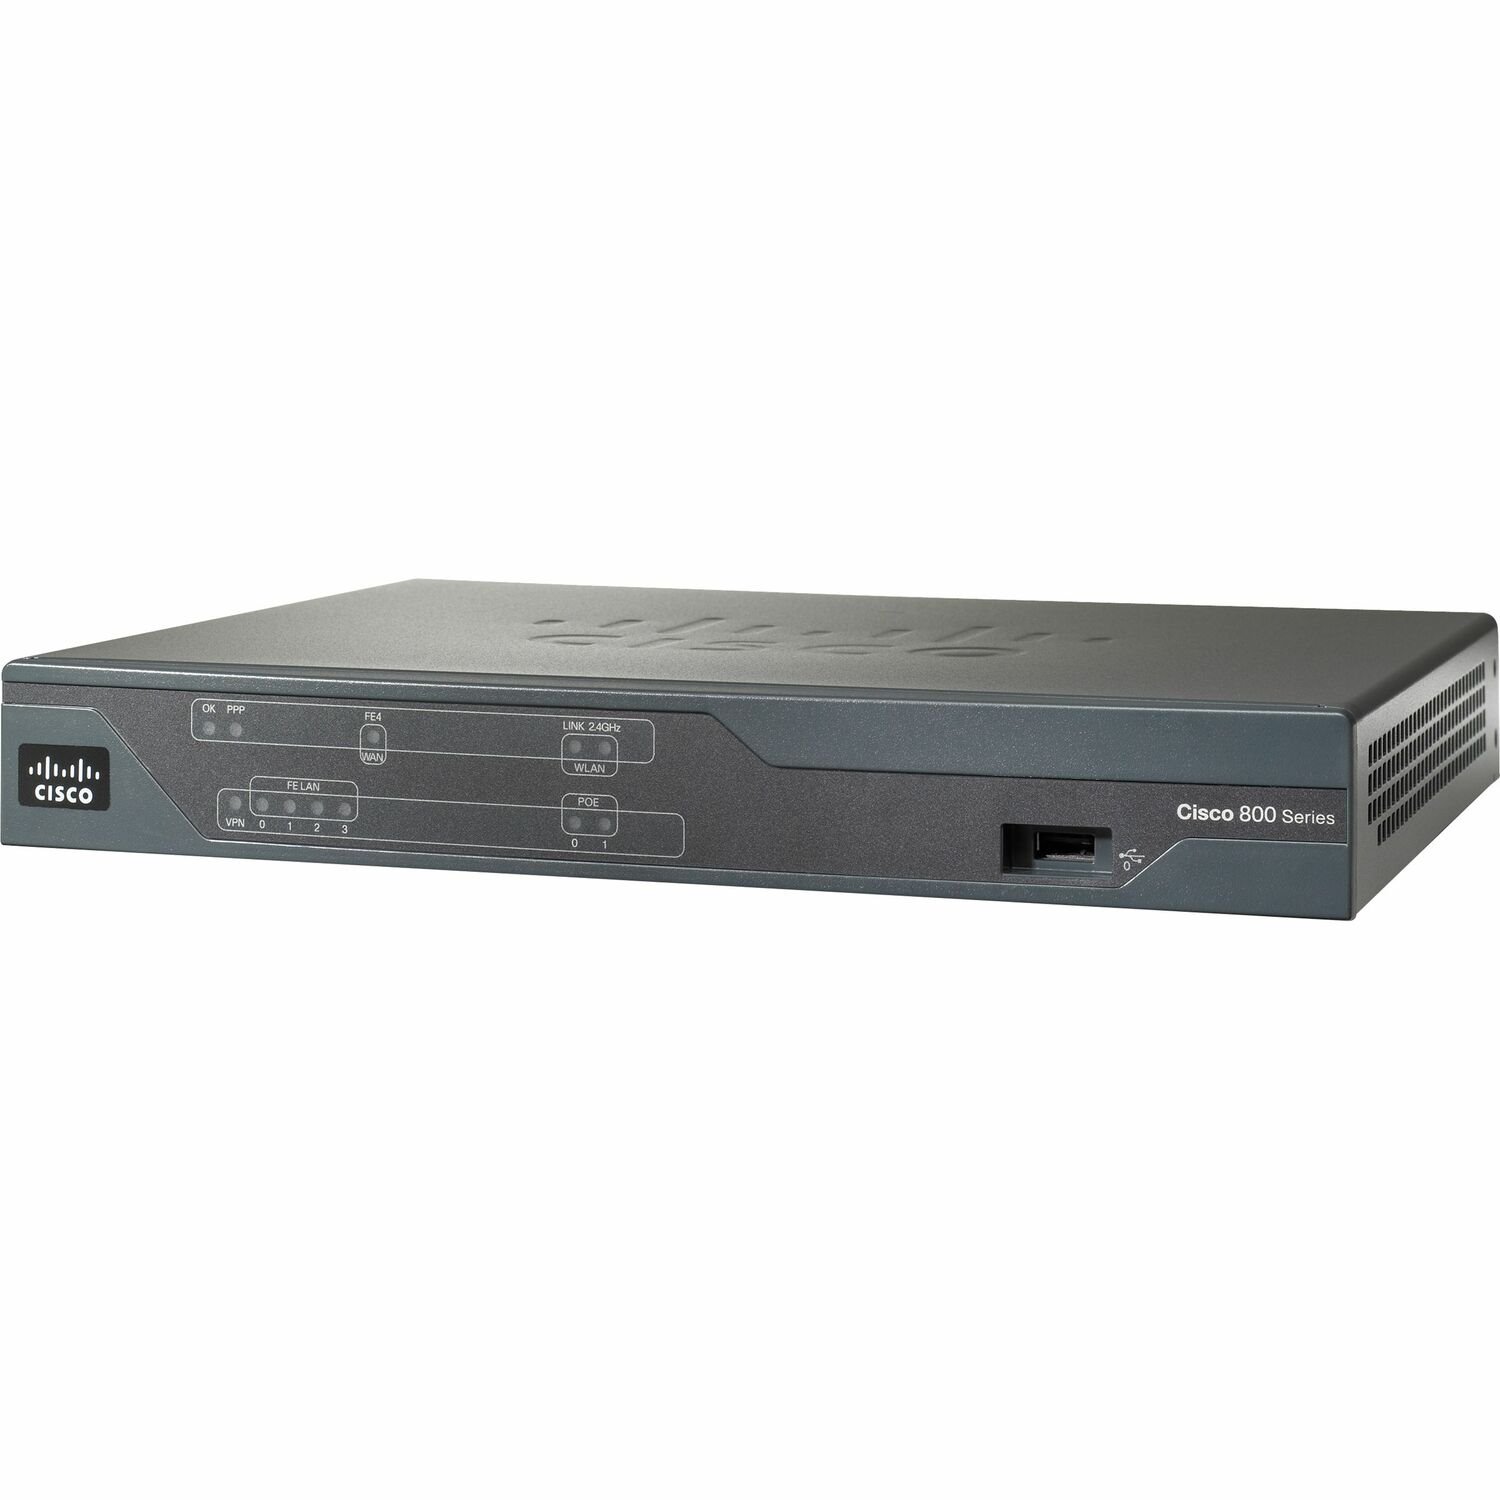 Cisco 881 SRST Multi Service Router